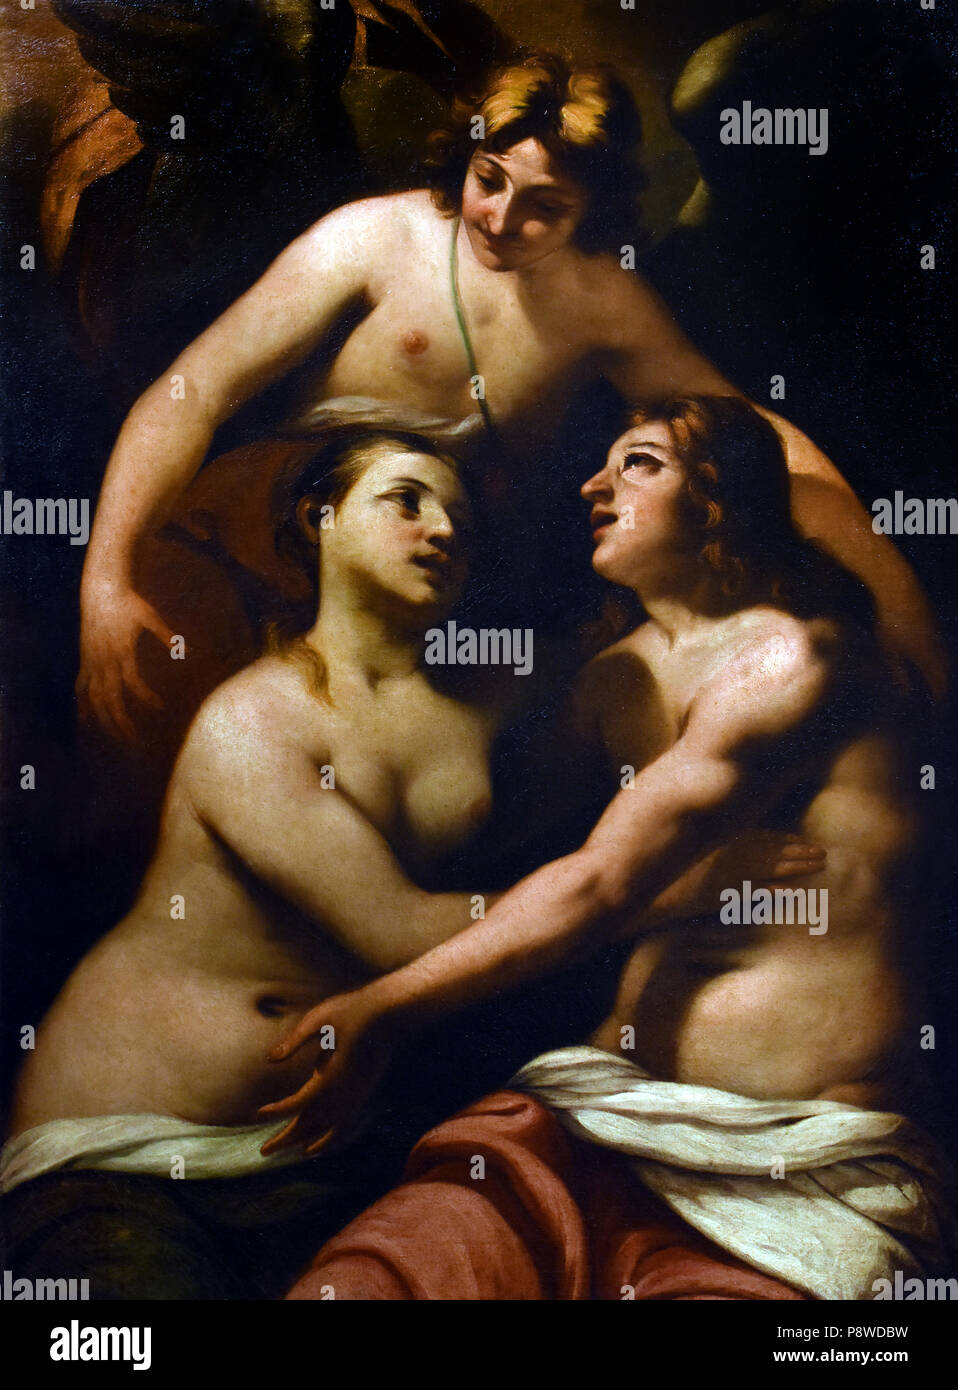 Adamo ed Eva in paradiso - Adam et Eve dans le paradis par Antonio Zanchi 1631 - 1722 peintre italien baroque, Venise, Italie, italien. Banque D'Images